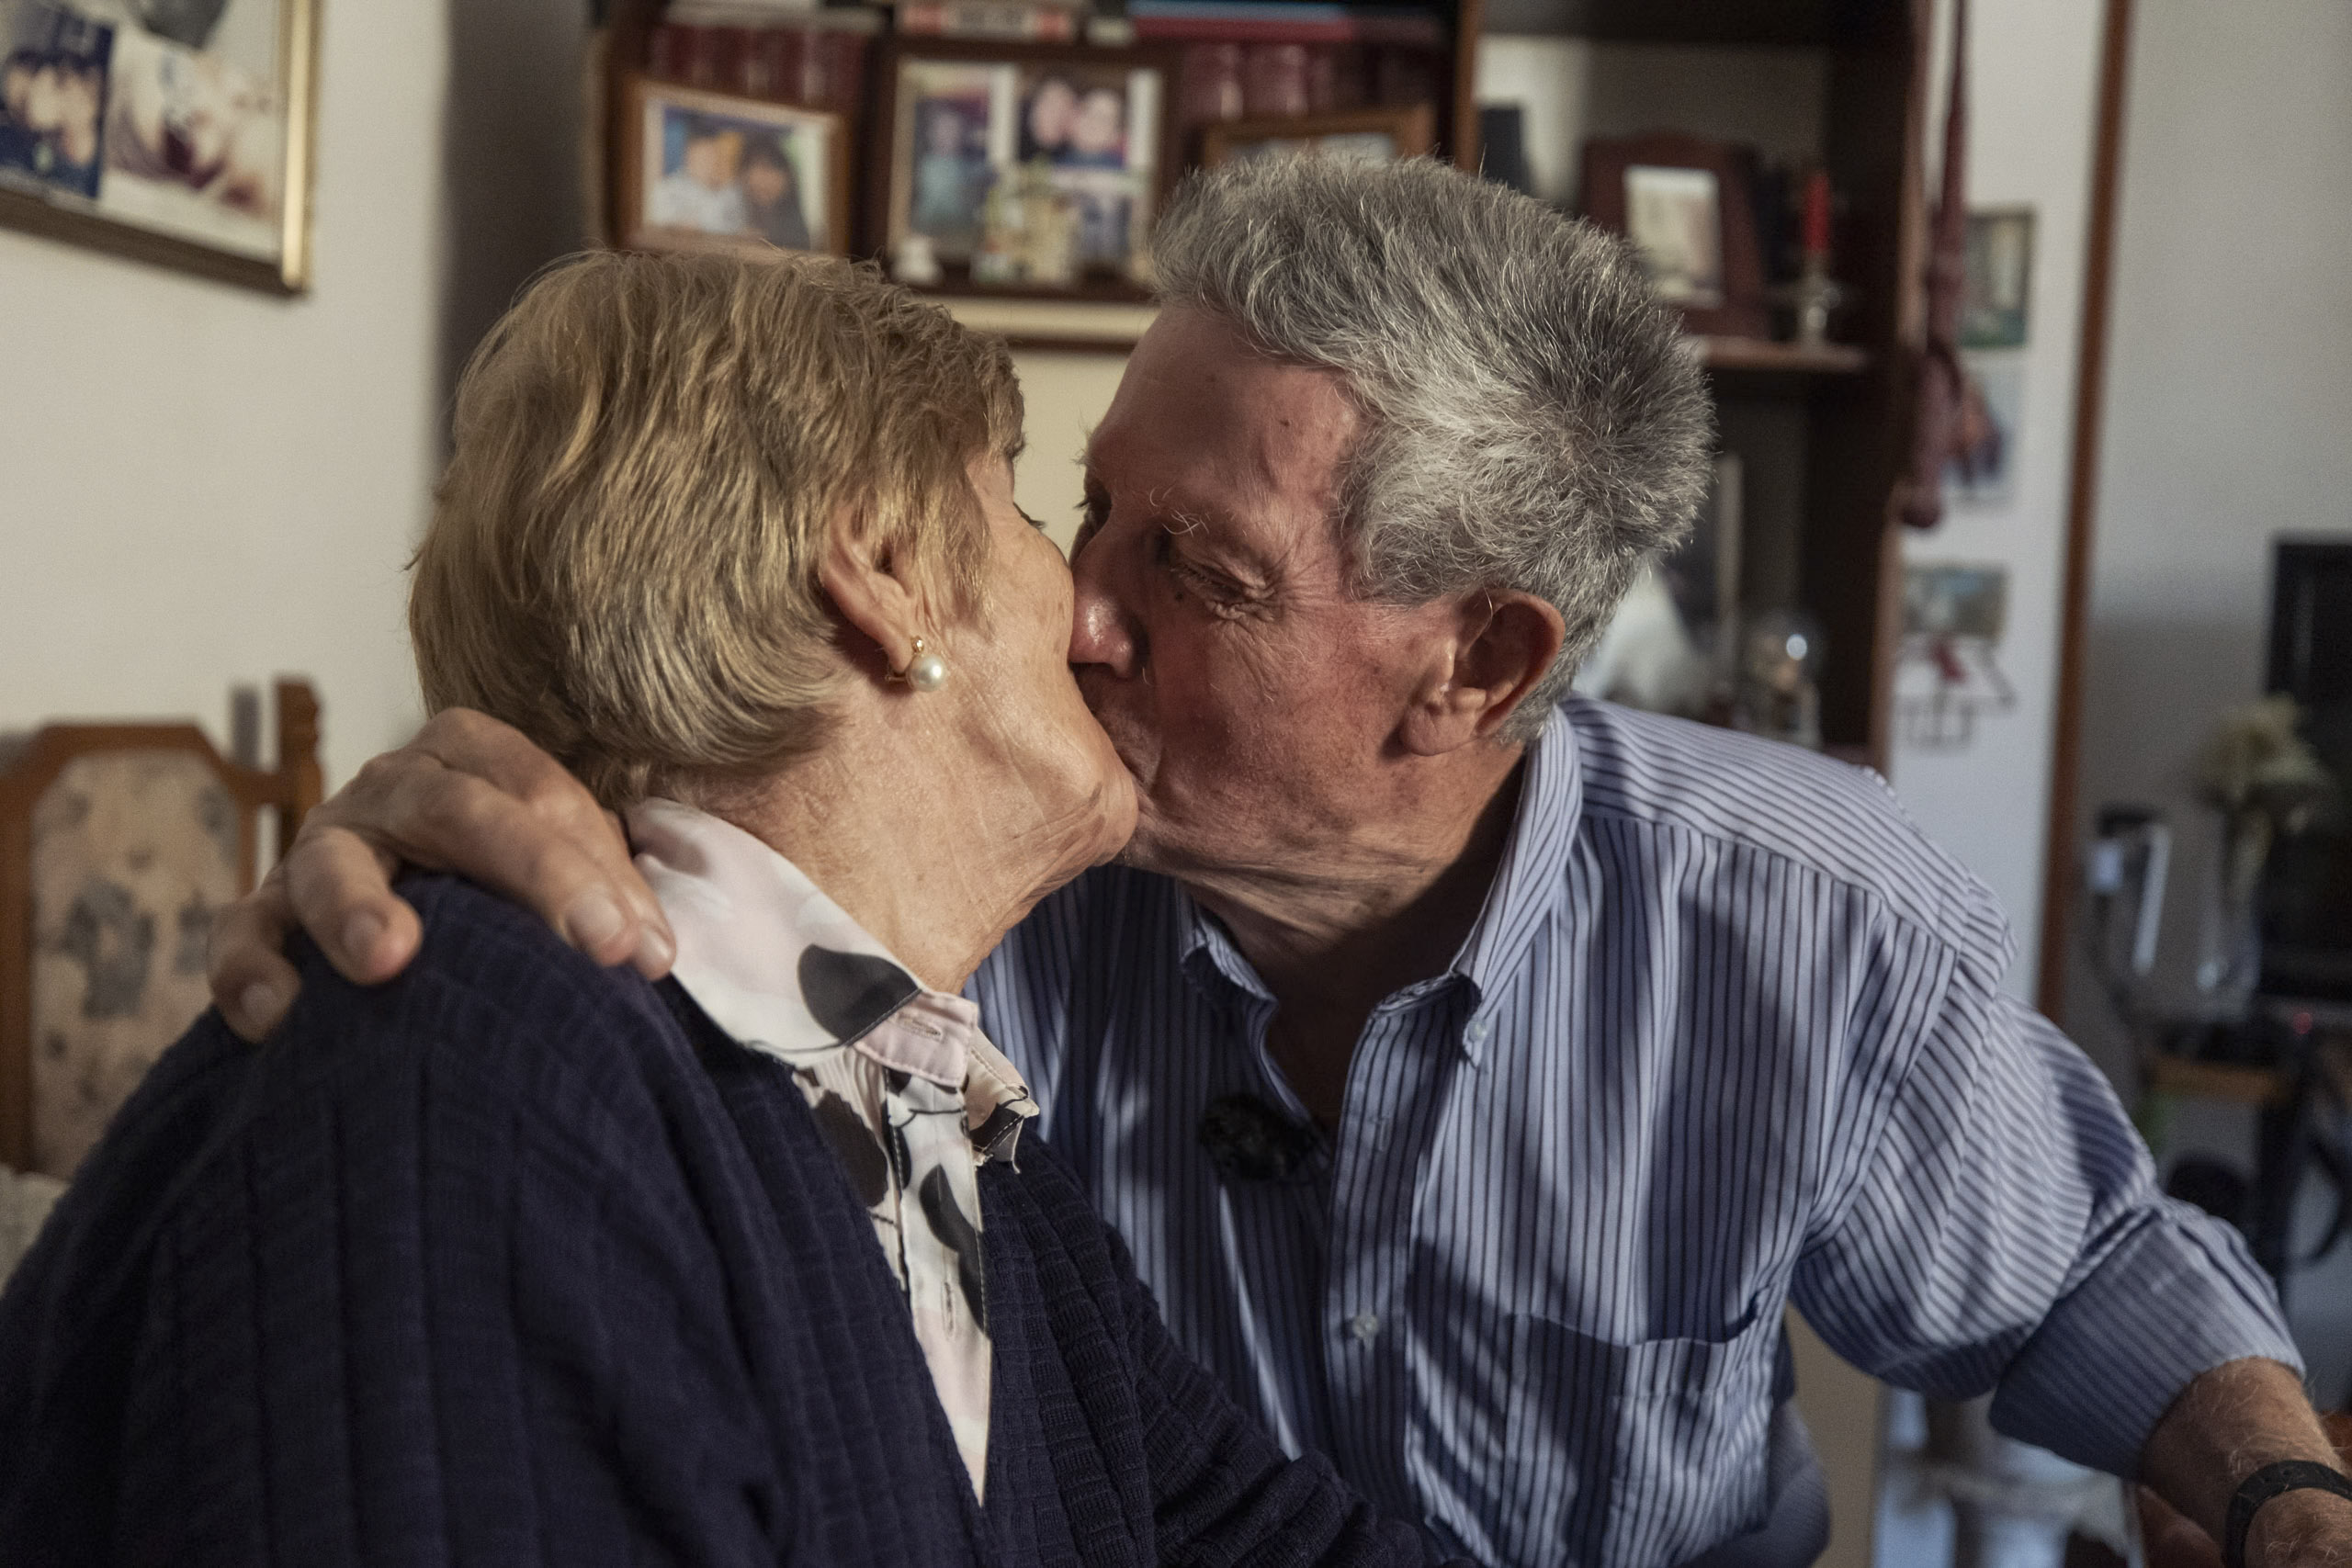 Ein älteres Paar küsst sich zärtlich in einem gemütlichen Raum voller Fotos und Dekorationen und zeigt damit einen Moment der Zuneigung und lebenslangen Kameradschaft. © Fotografie Tomas Rodriguez